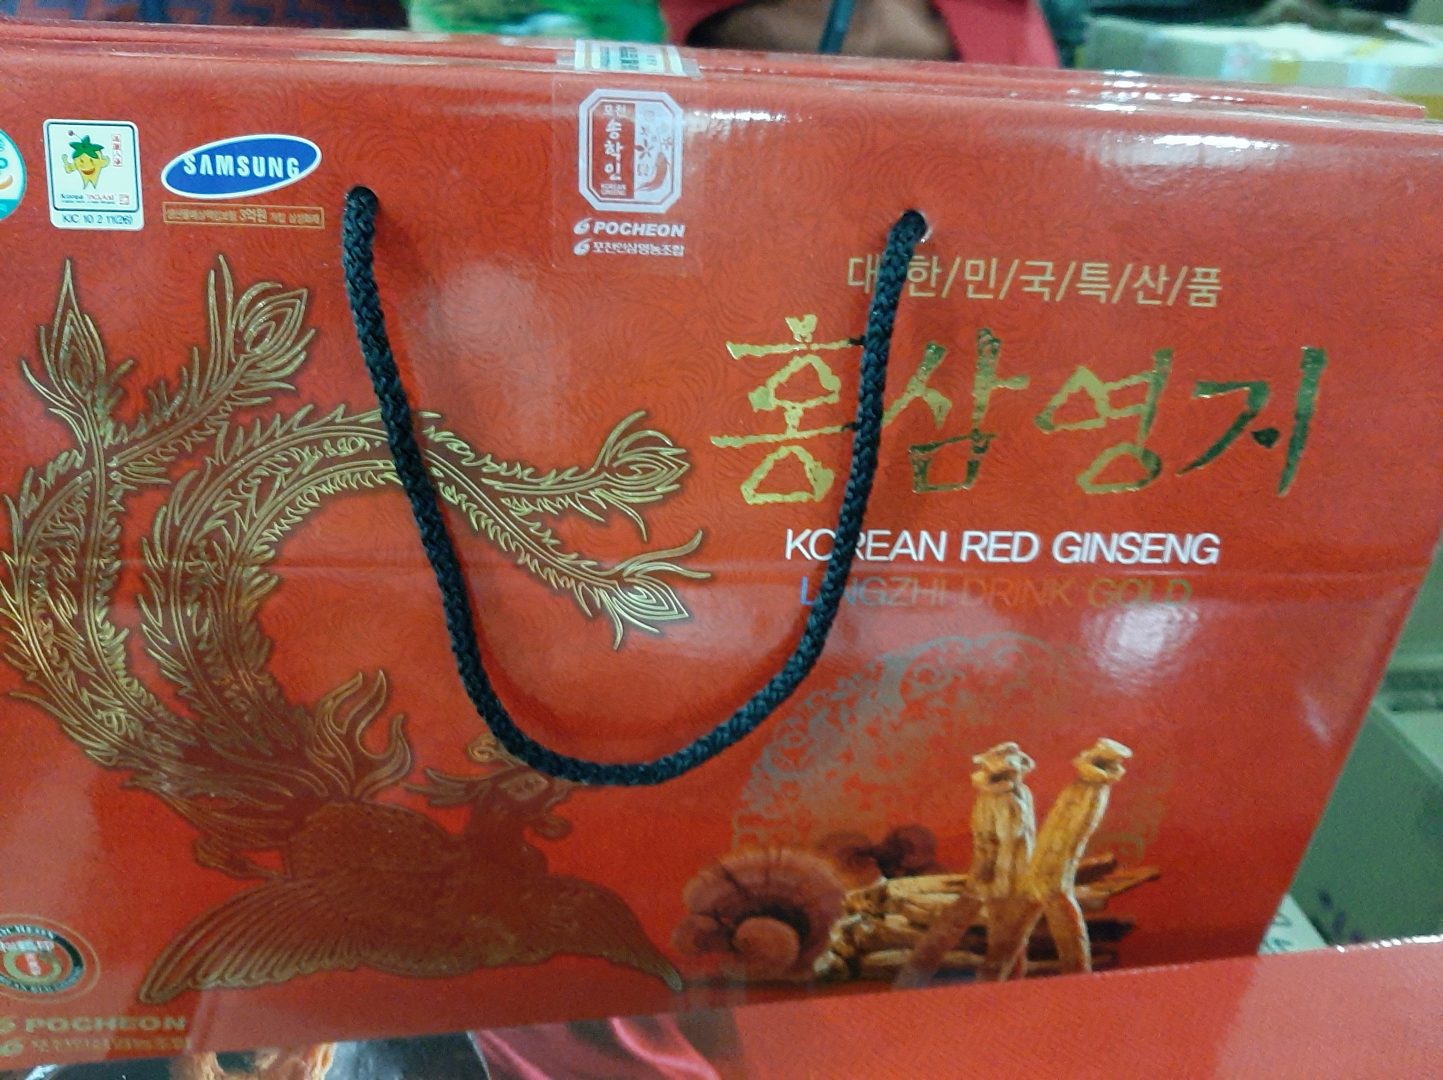 Hình ảnh thực tế sản phẩm nước hồng sâm tới từ thương hiệu Pocheon tại quatet.vip